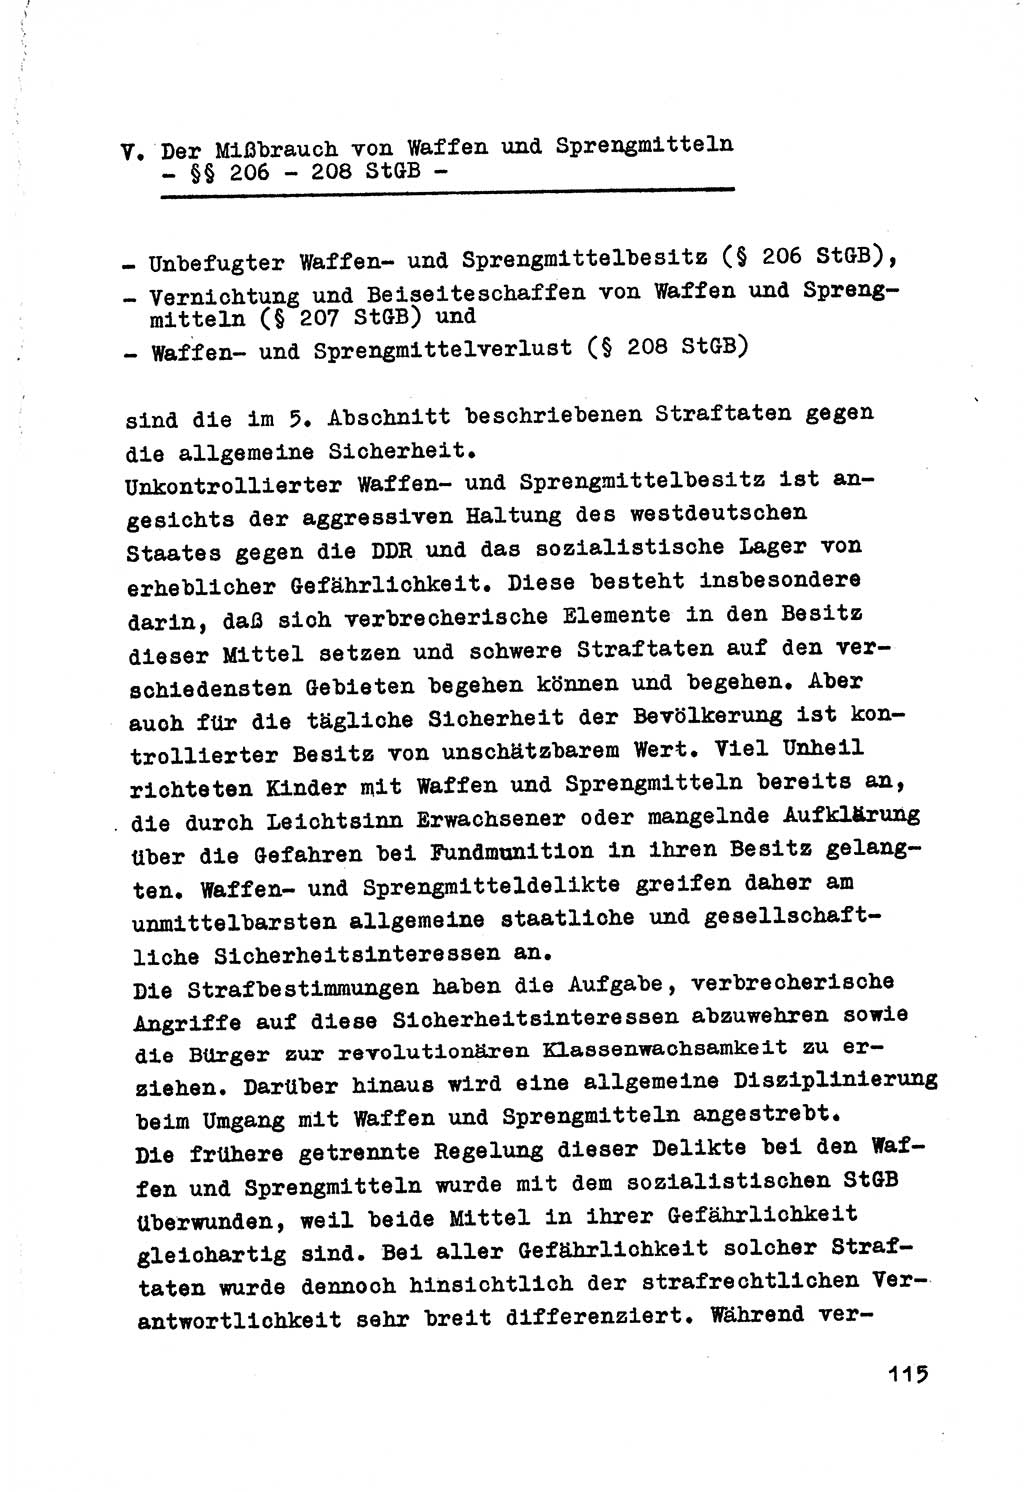 Strafrecht der DDR (Deutsche Demokratische Republik), Besonderer Teil, Lehrmaterial, Heft 7 1970, Seite 115 (Strafr. DDR BT Lehrmat. H. 7 1970, S. 115)